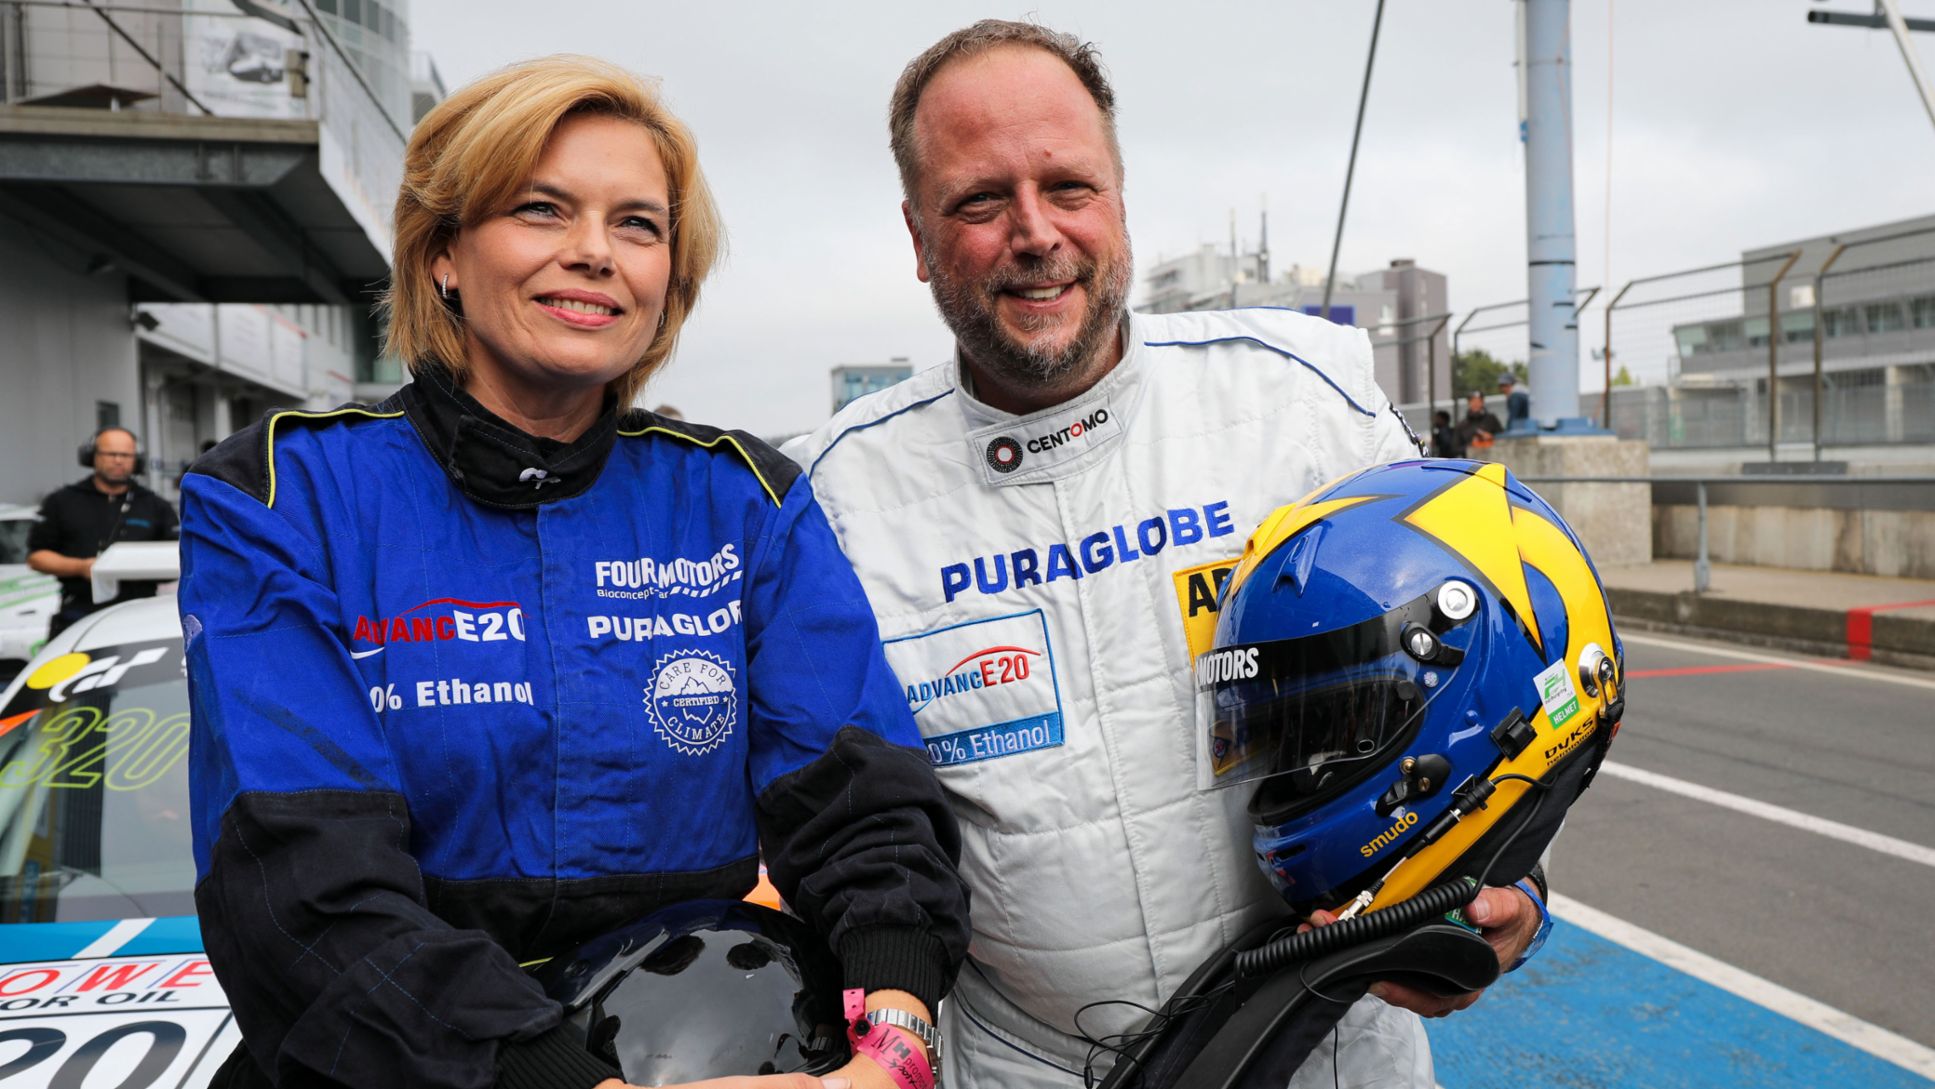 Julia Klöckner, Federal Minister, Smudo, Rapper, 911 GT3 Cup, Nürburgring, 2018, Porsche AG